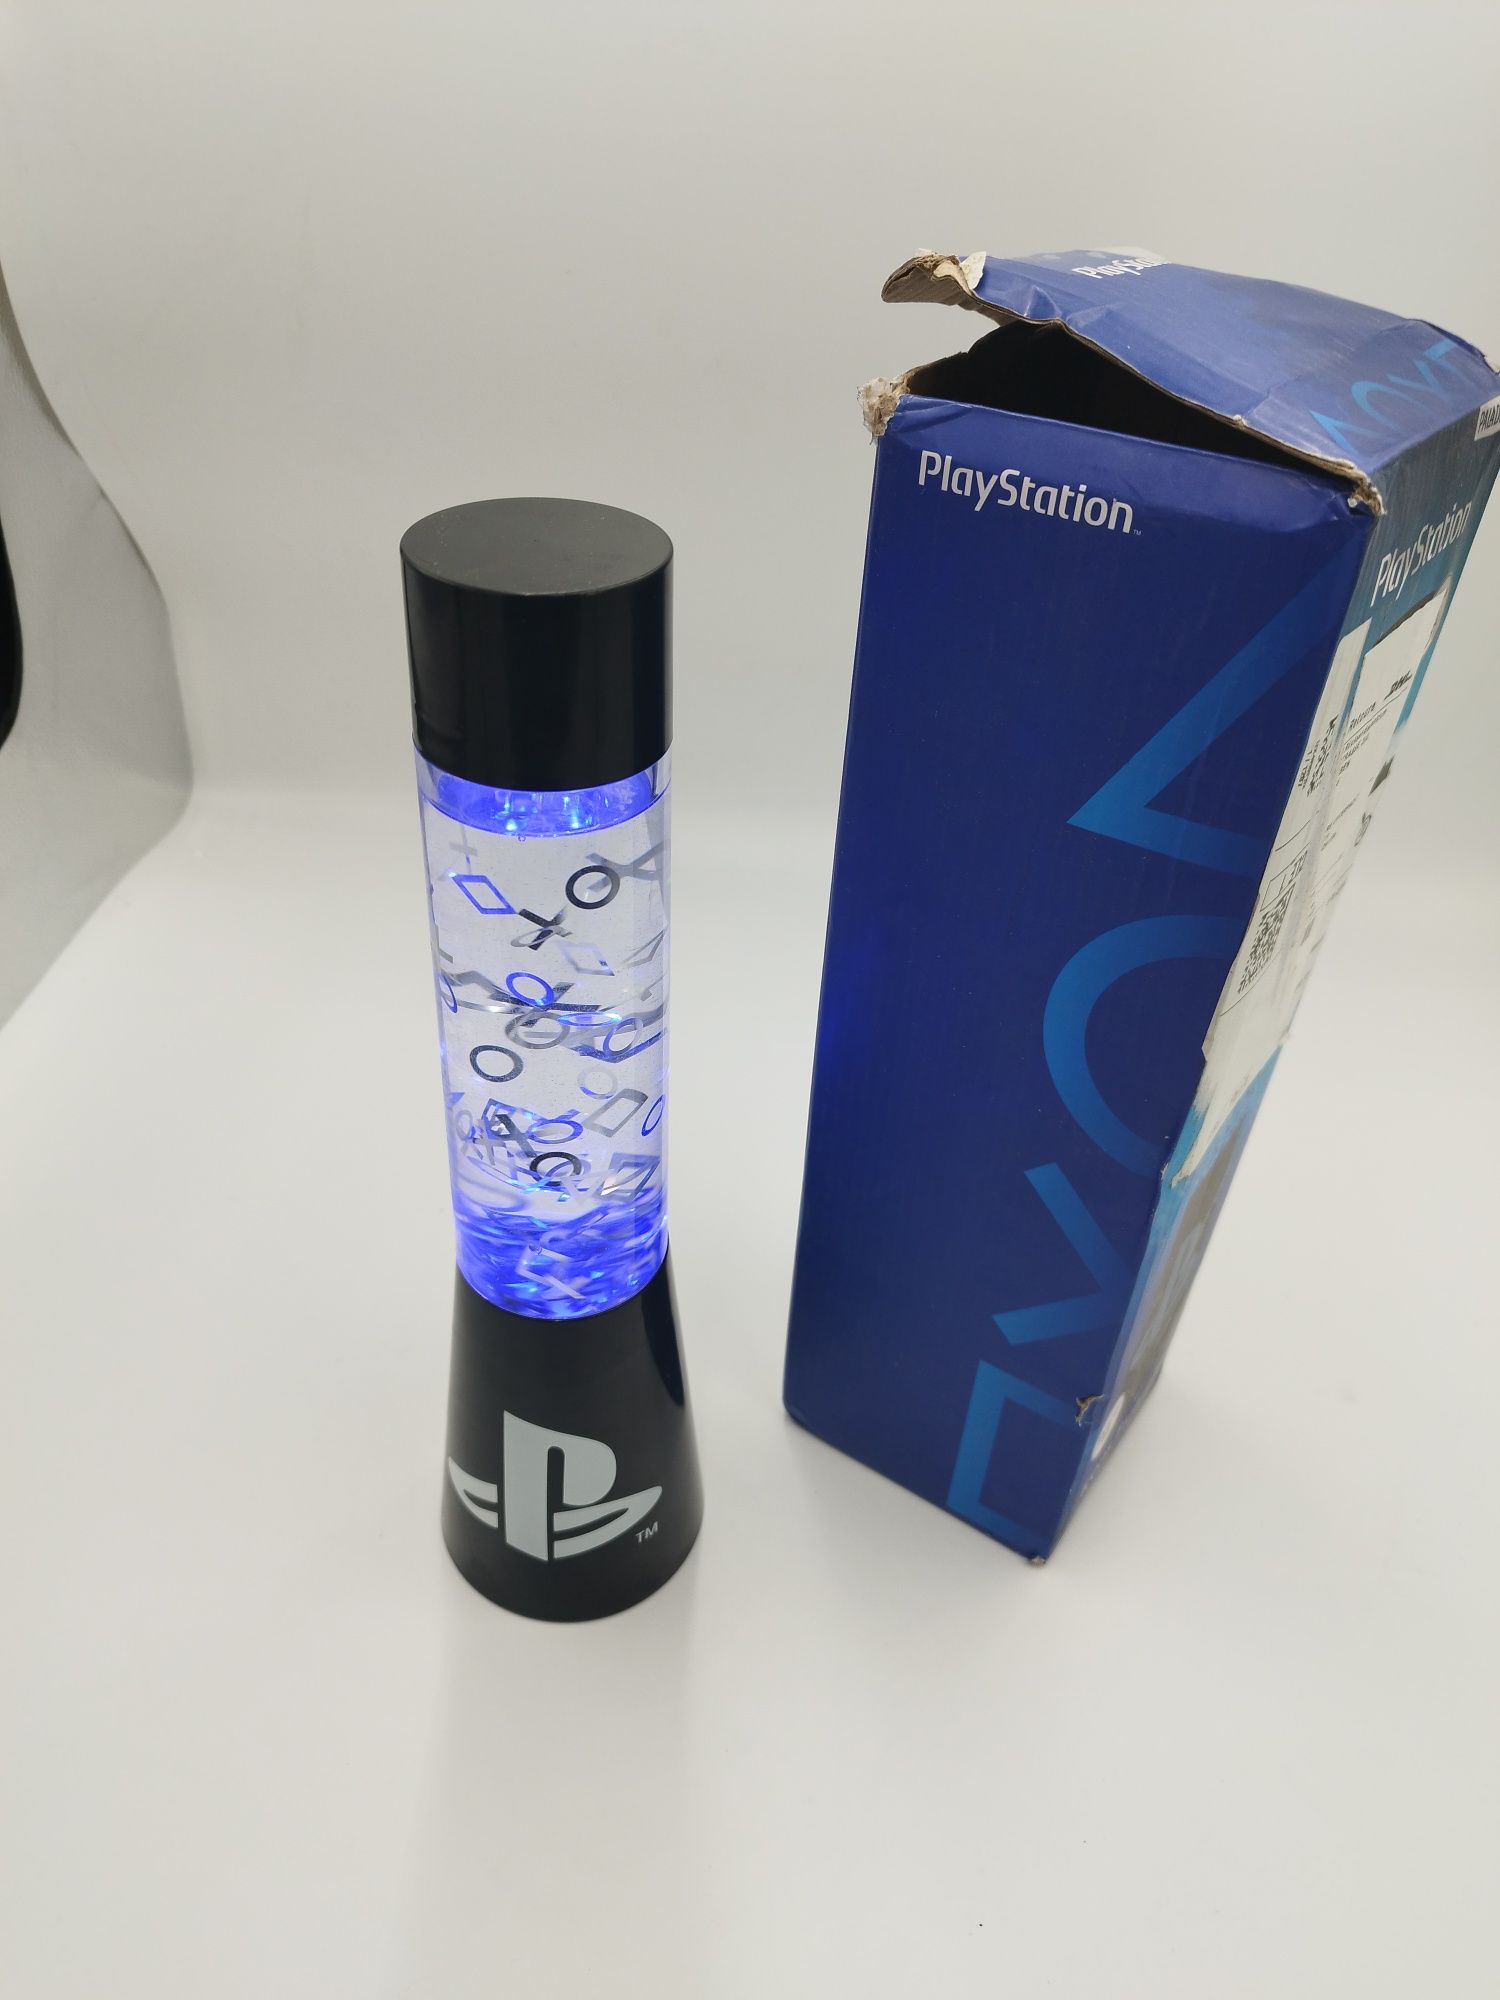 Lampa PlayStation paladone